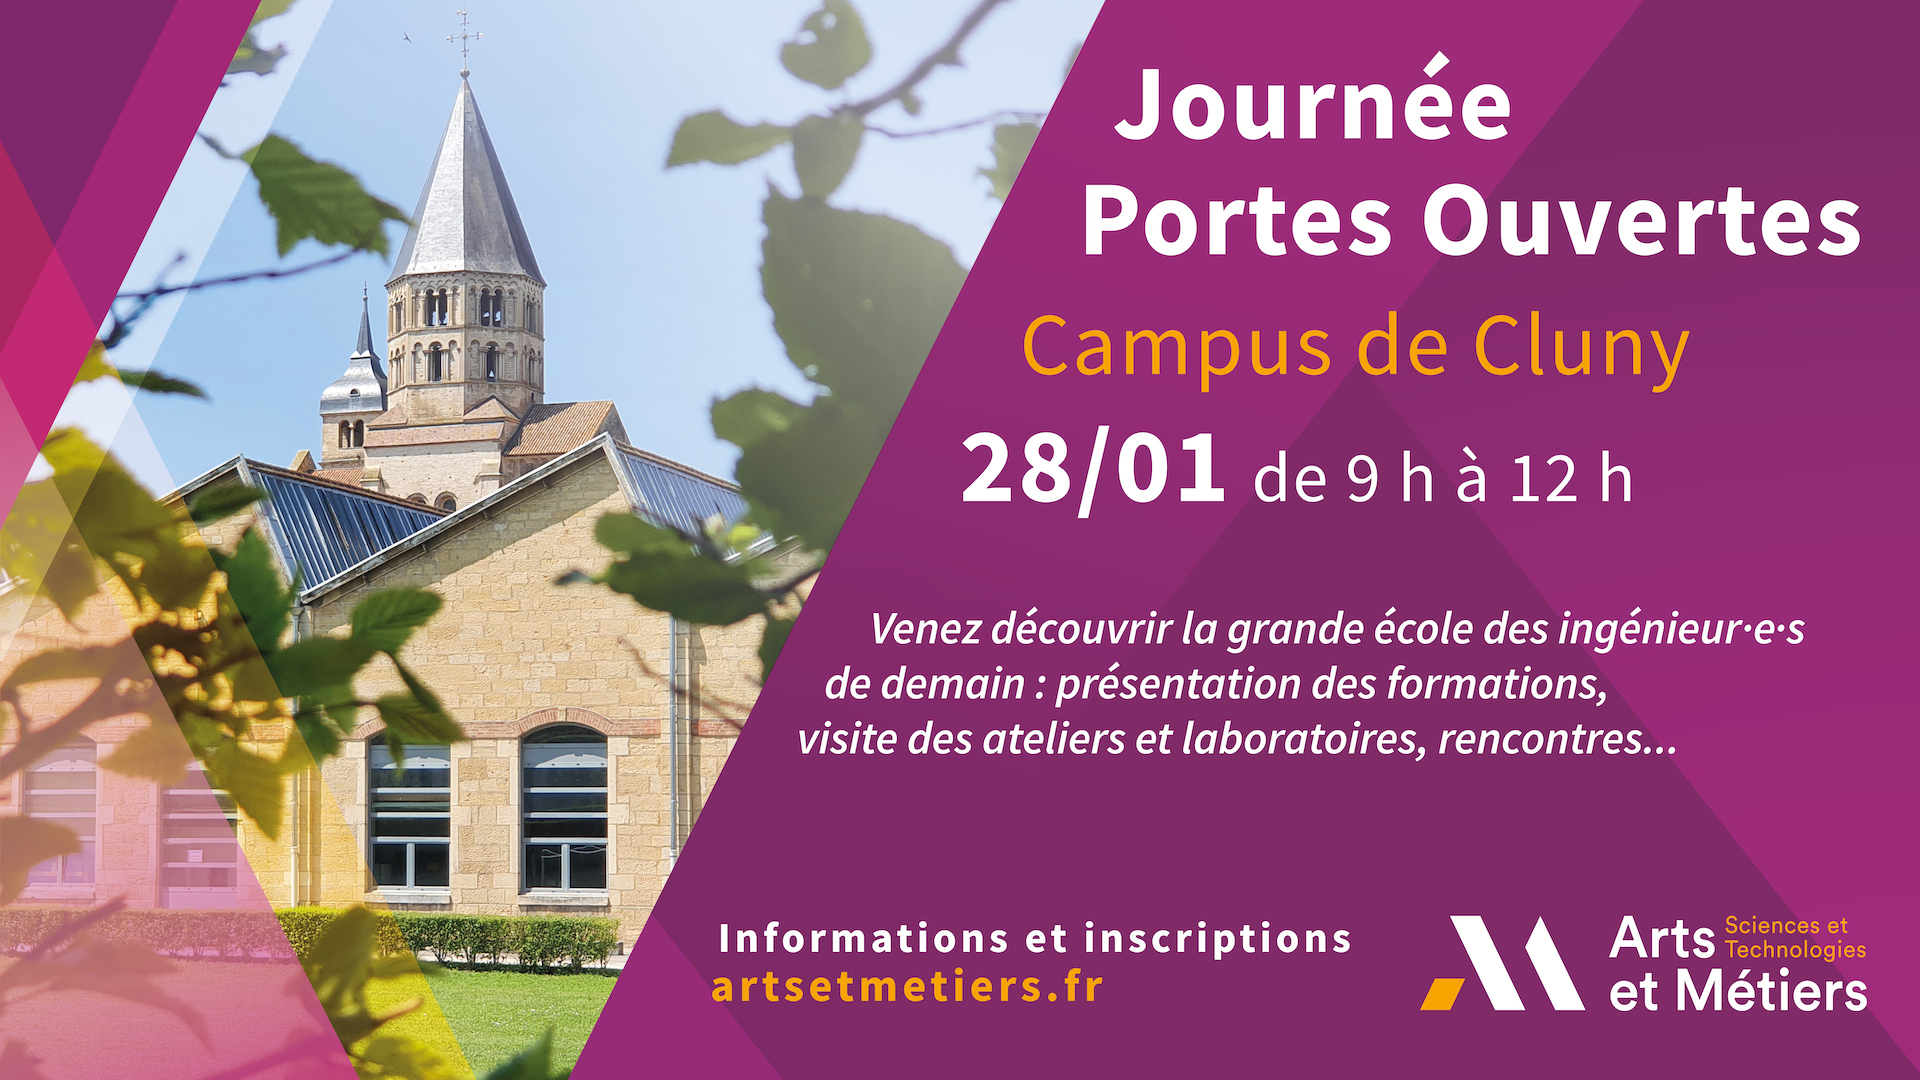 Journée Portes Ouvertes du campus de Cluny